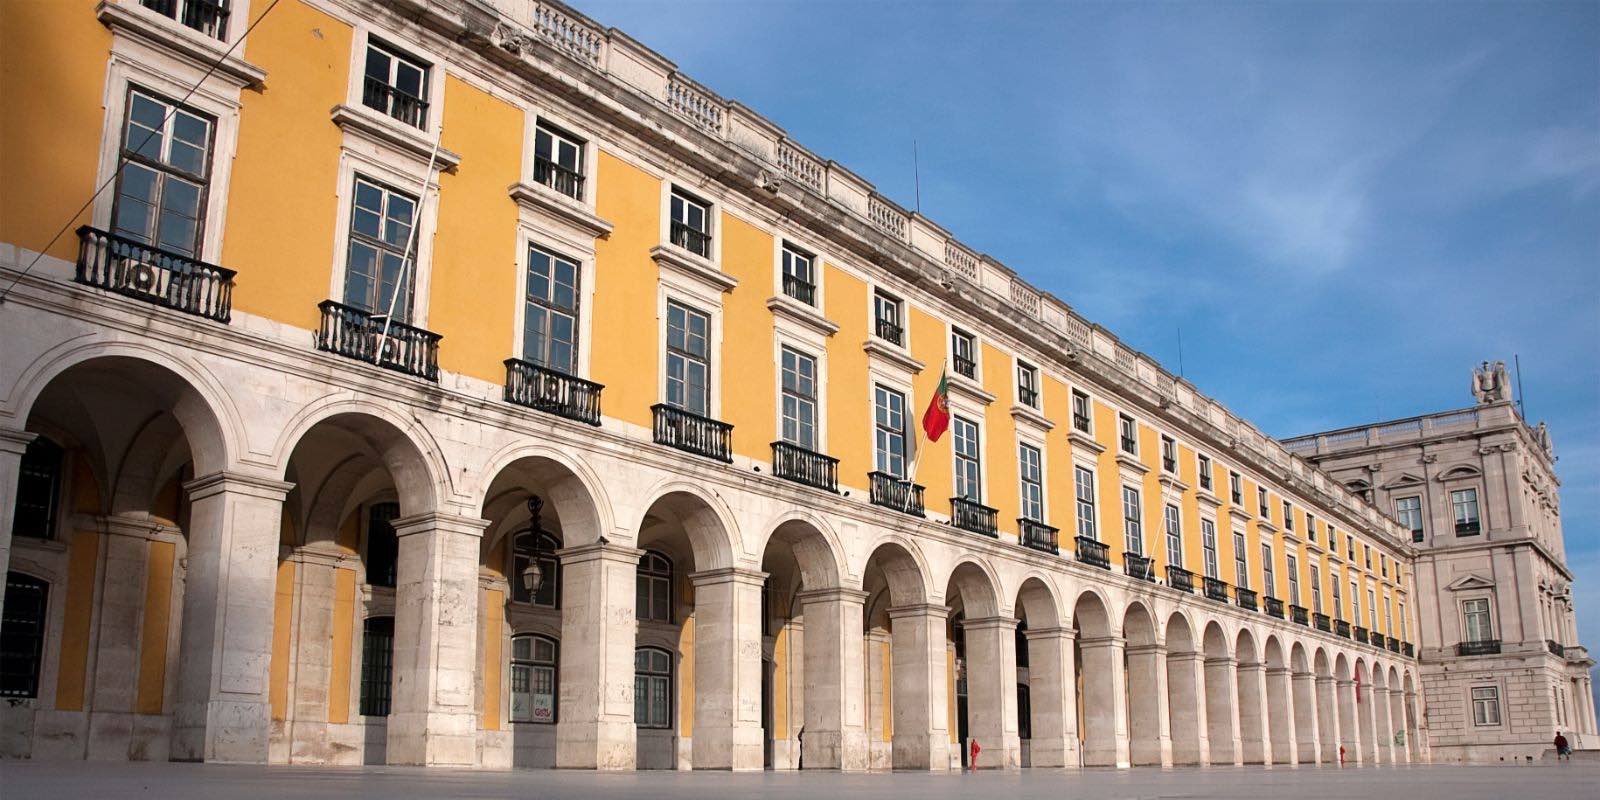 The Praça do Comércio in Portugal